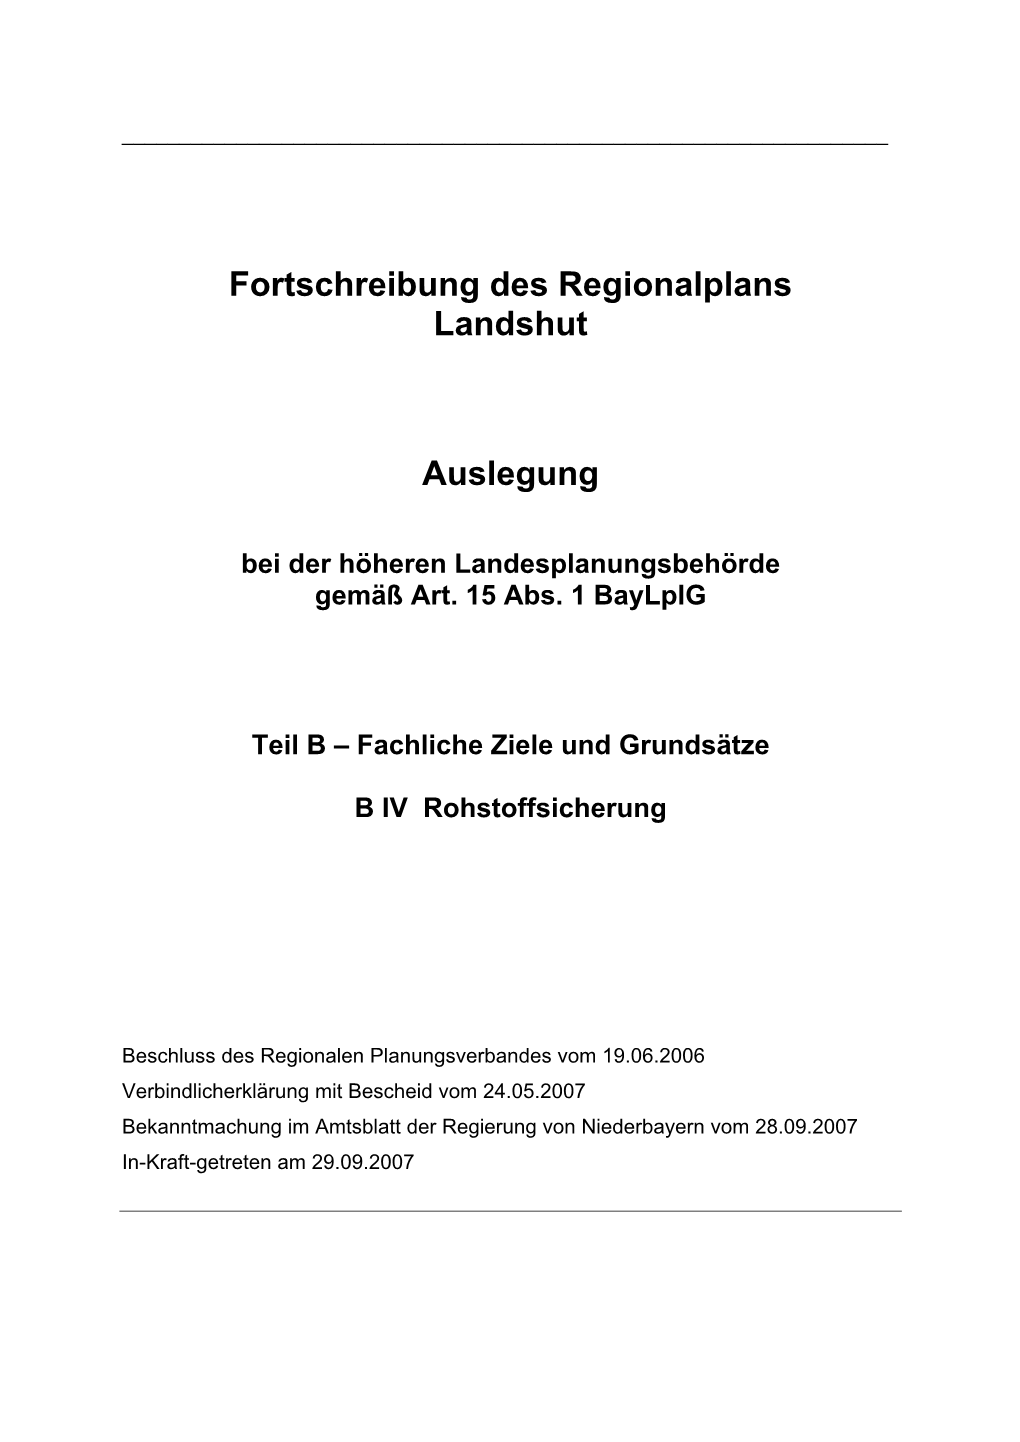 Erste Verordnung Zur Änderung Des Regionalplans Der Region Landshut